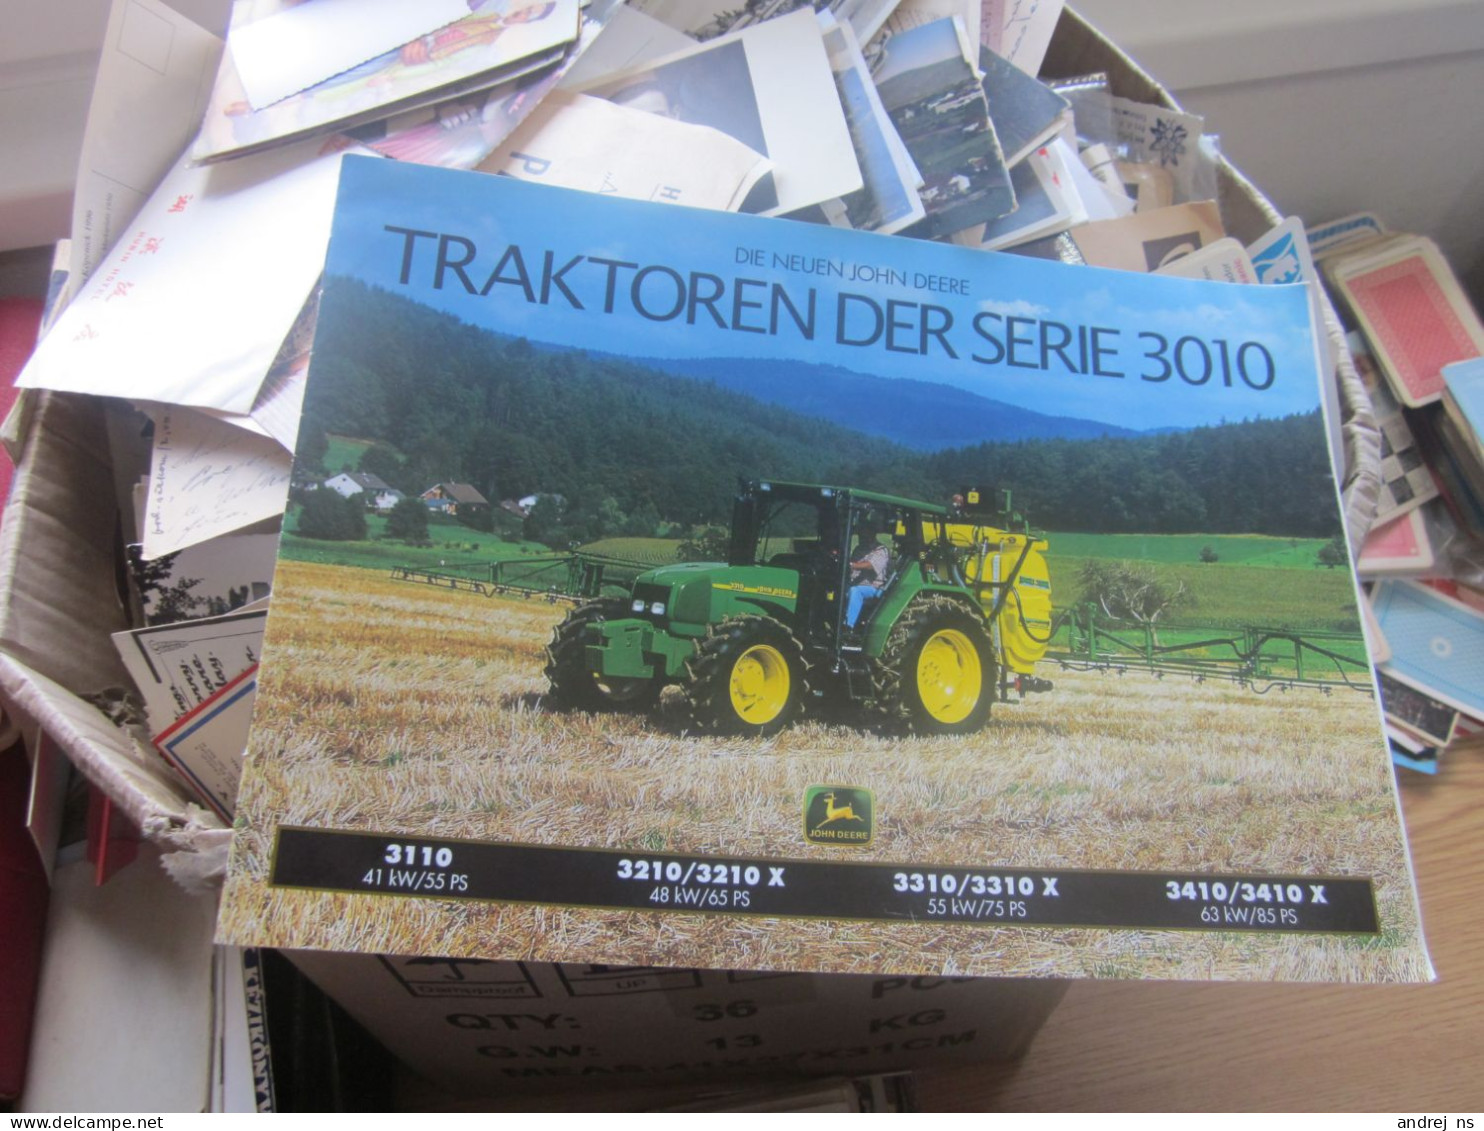 Die Neuen John Deere Traktoren Der Serie 3010 Catalog Of Tractors And Agricultural Machinery - Werbung